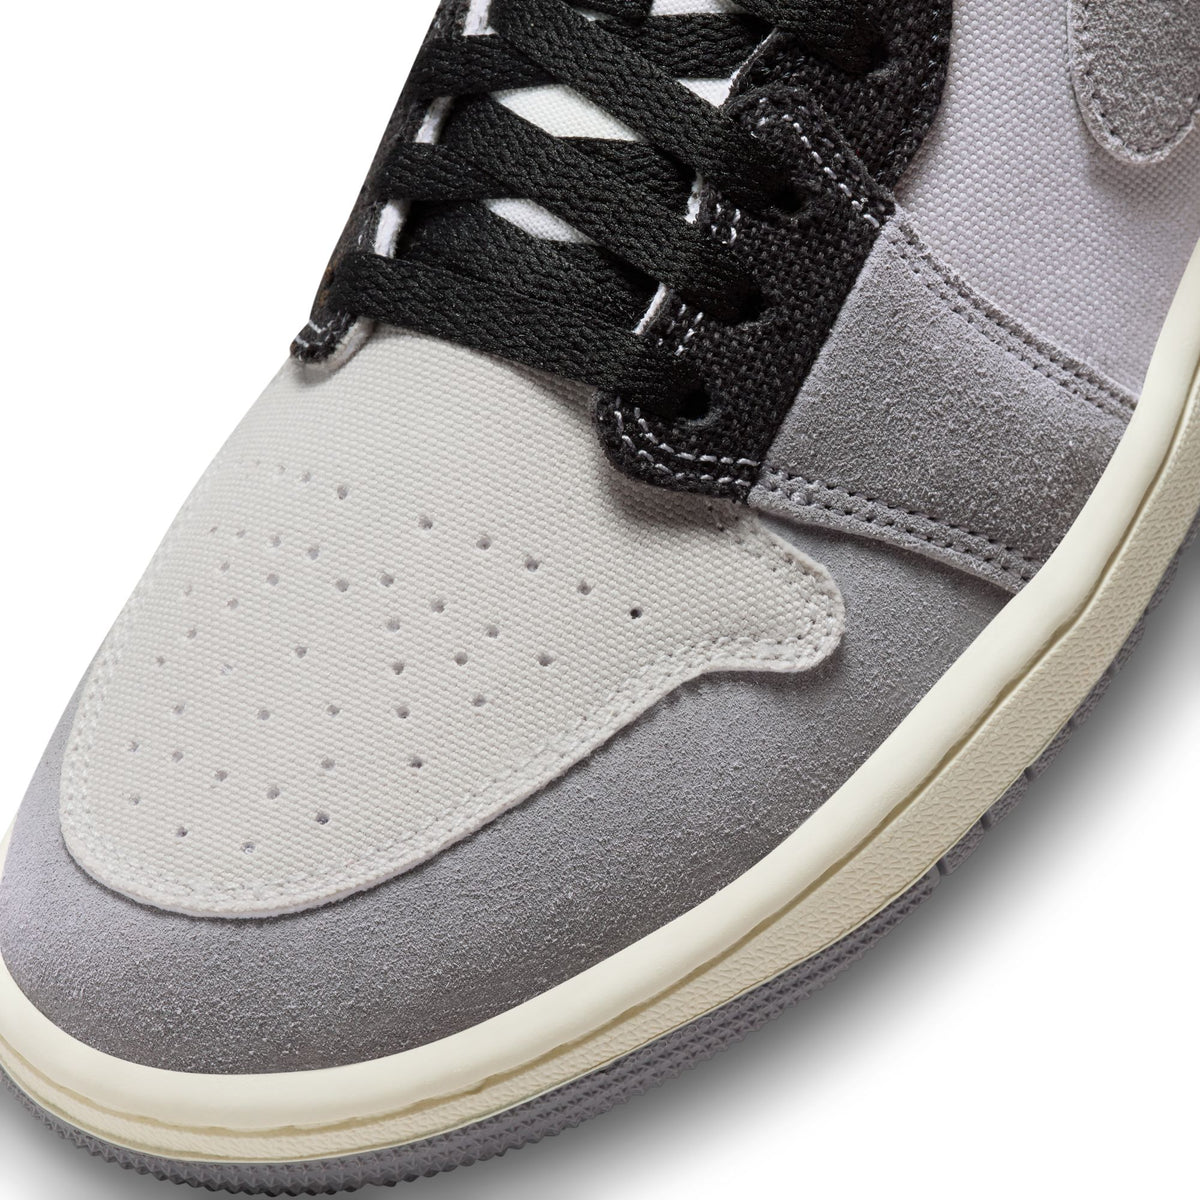 Air Jordan 1 Low SE Craft "Cement Grey" - Men